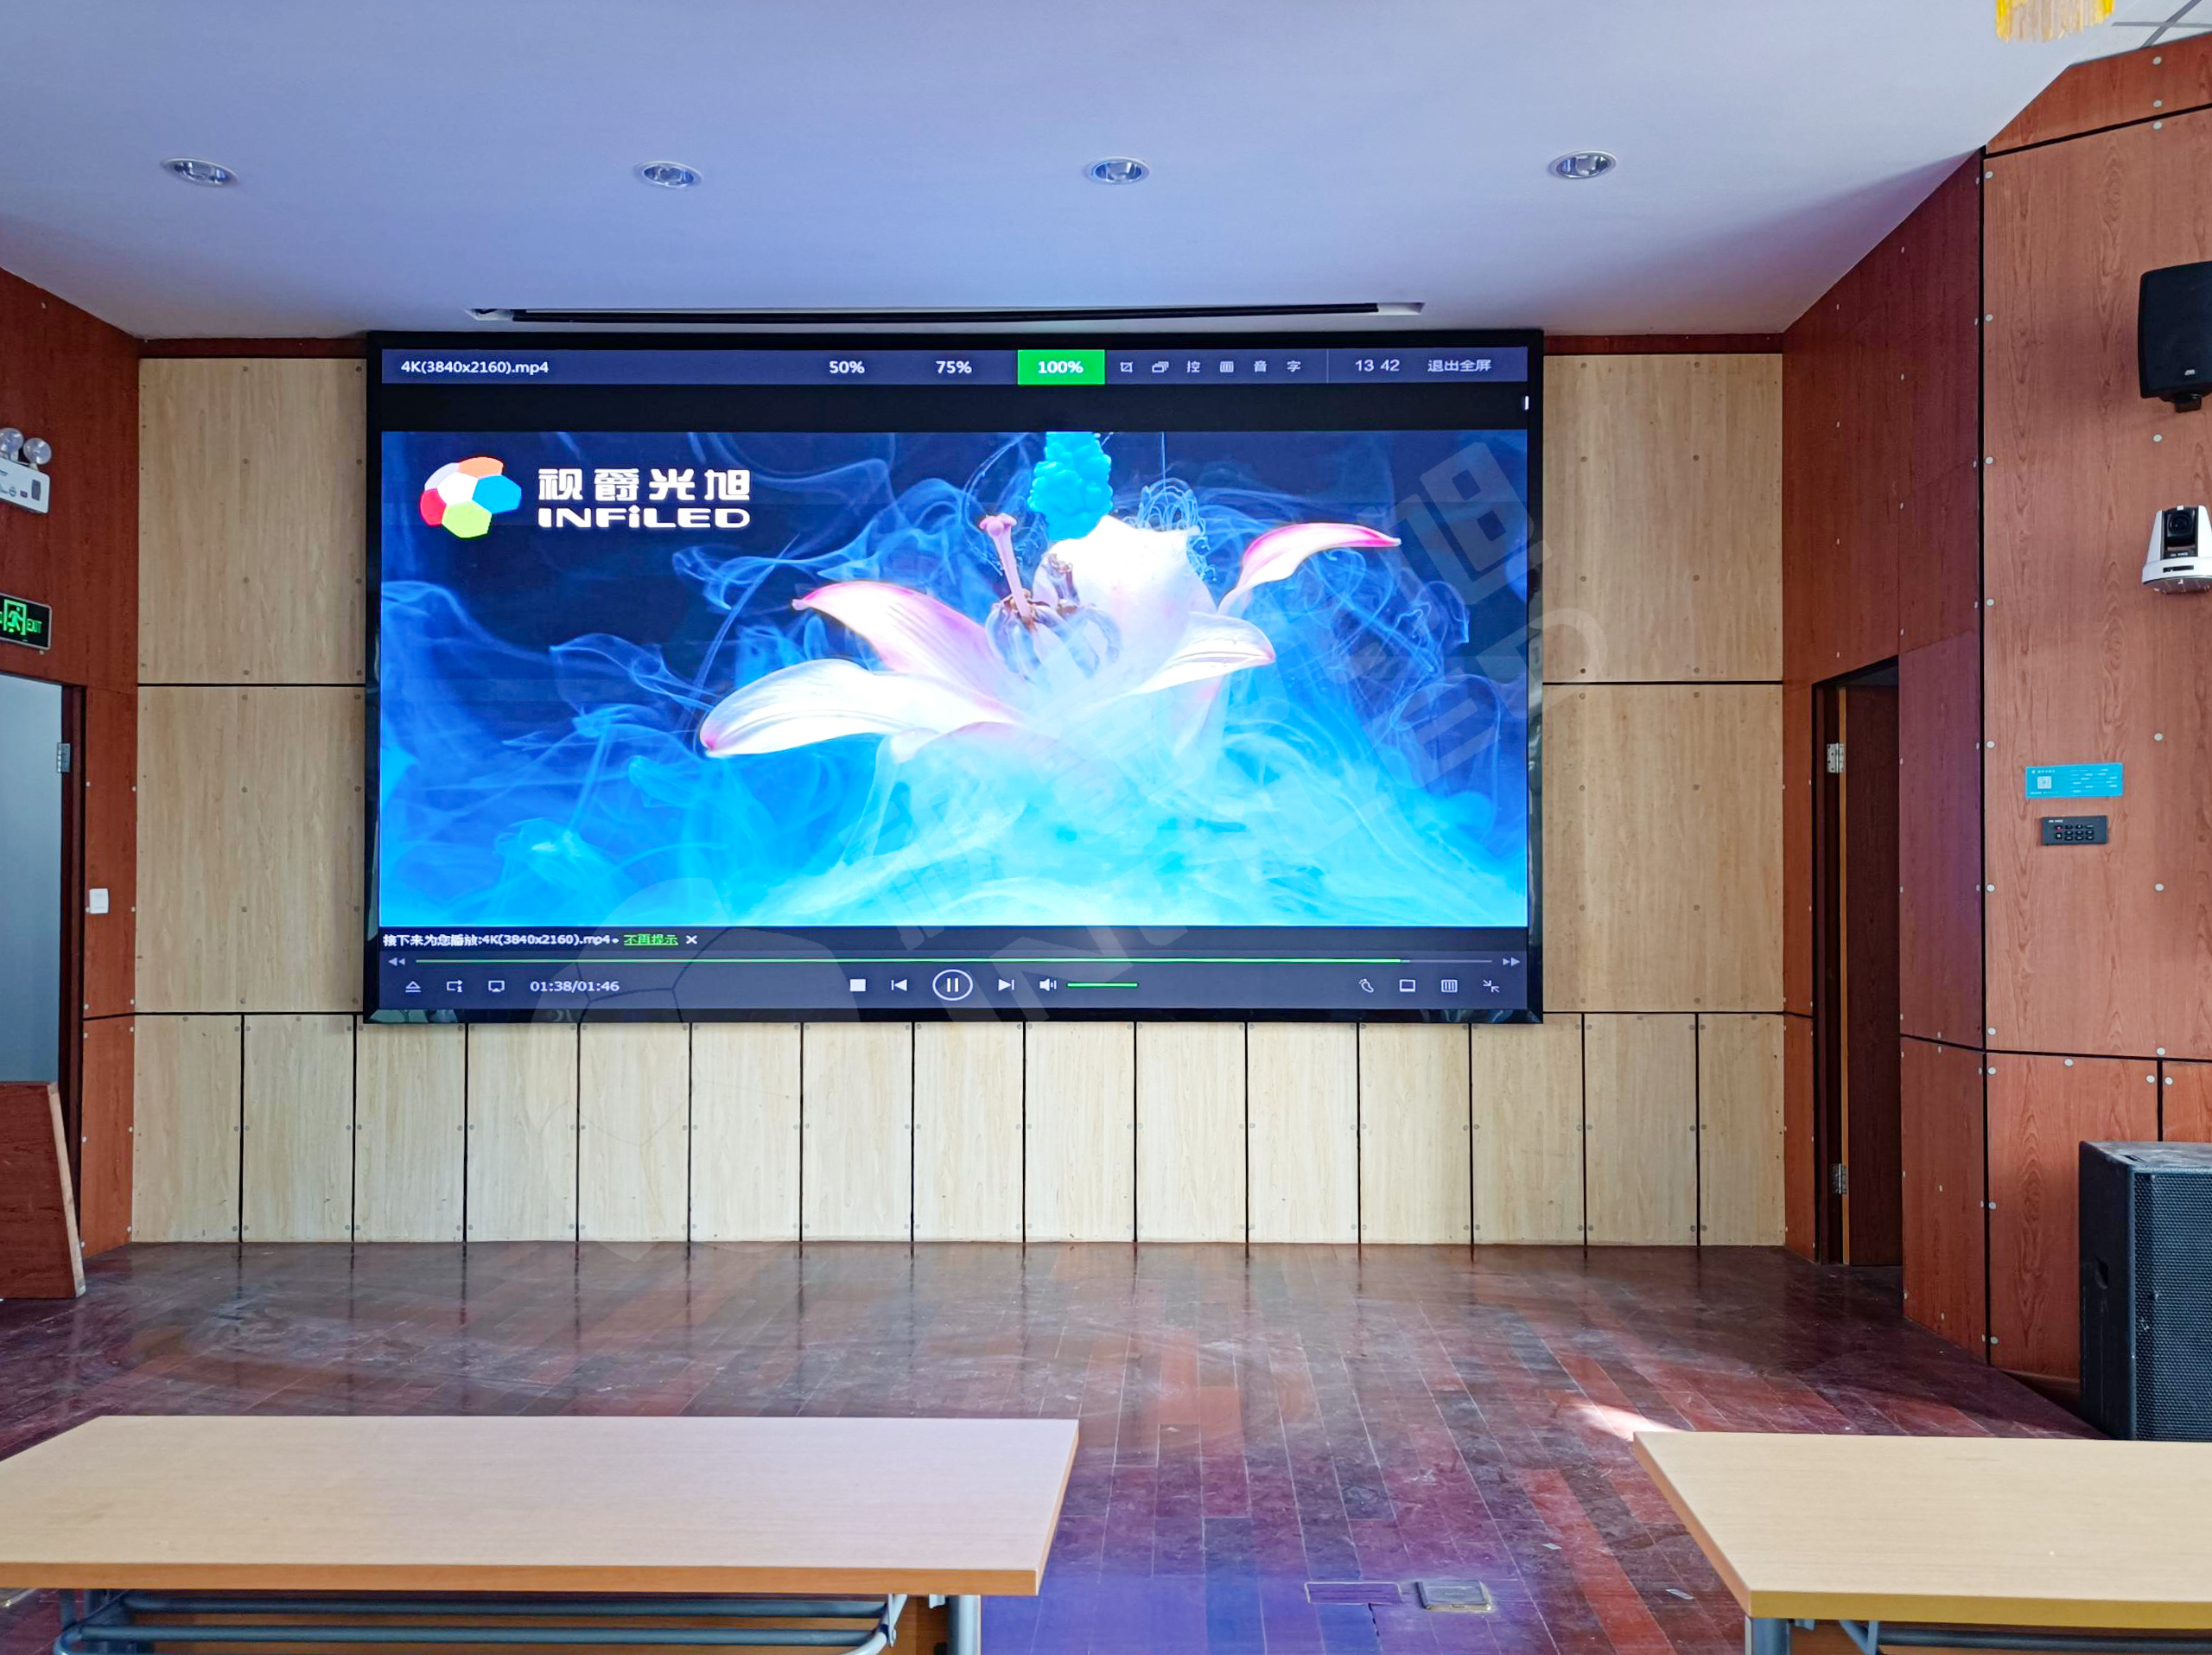 视爵光旭LED显示大屏走进上海市民办金盟学校多媒体教室